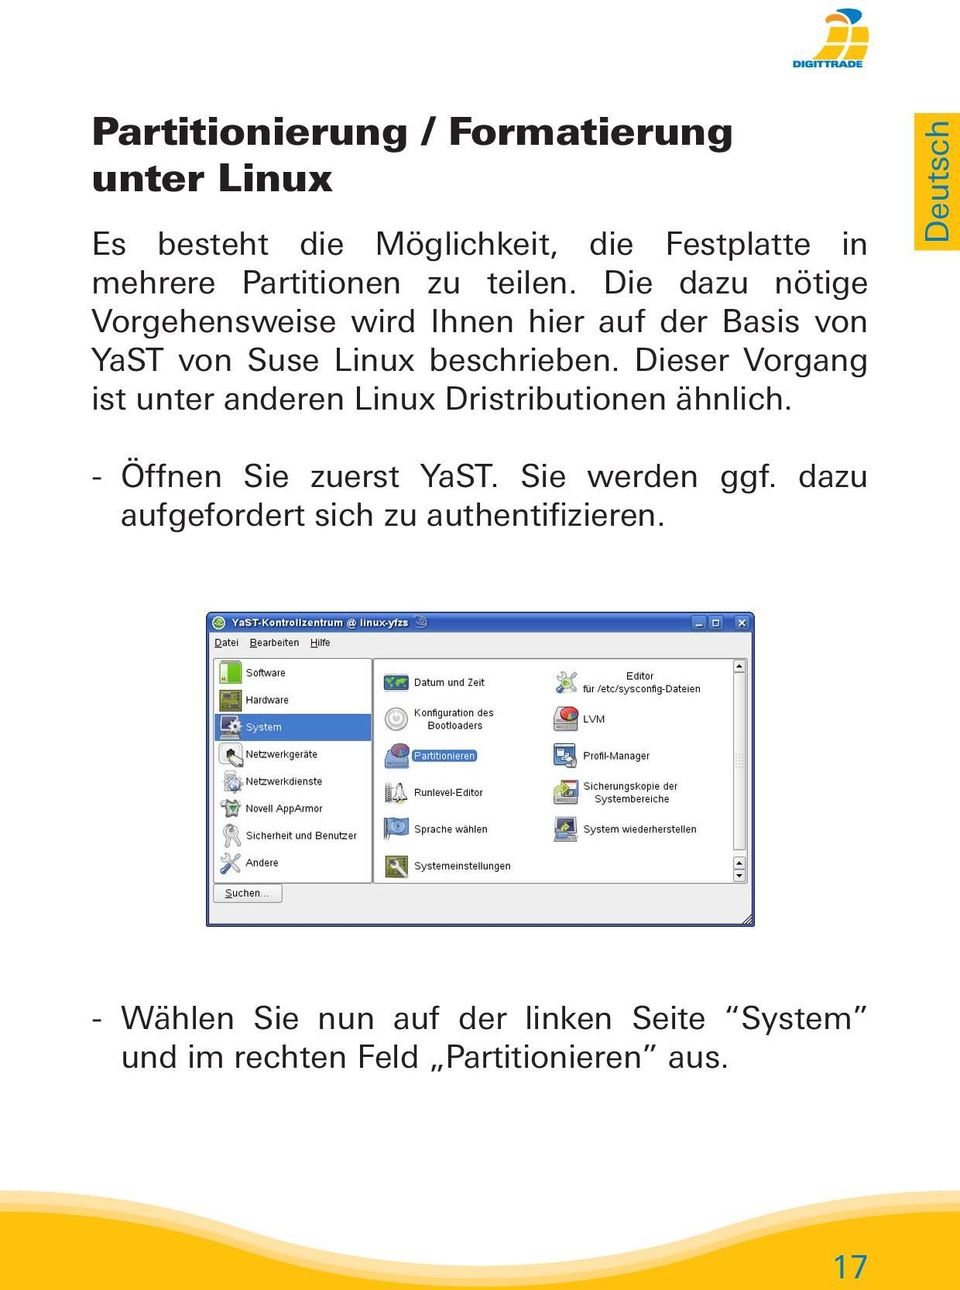 Dieser Vorgang ist unter anderen Linux Dristributionen ähnlich. Deutsch - Öffnen Sie zuerst YaST. Sie werden ggf.